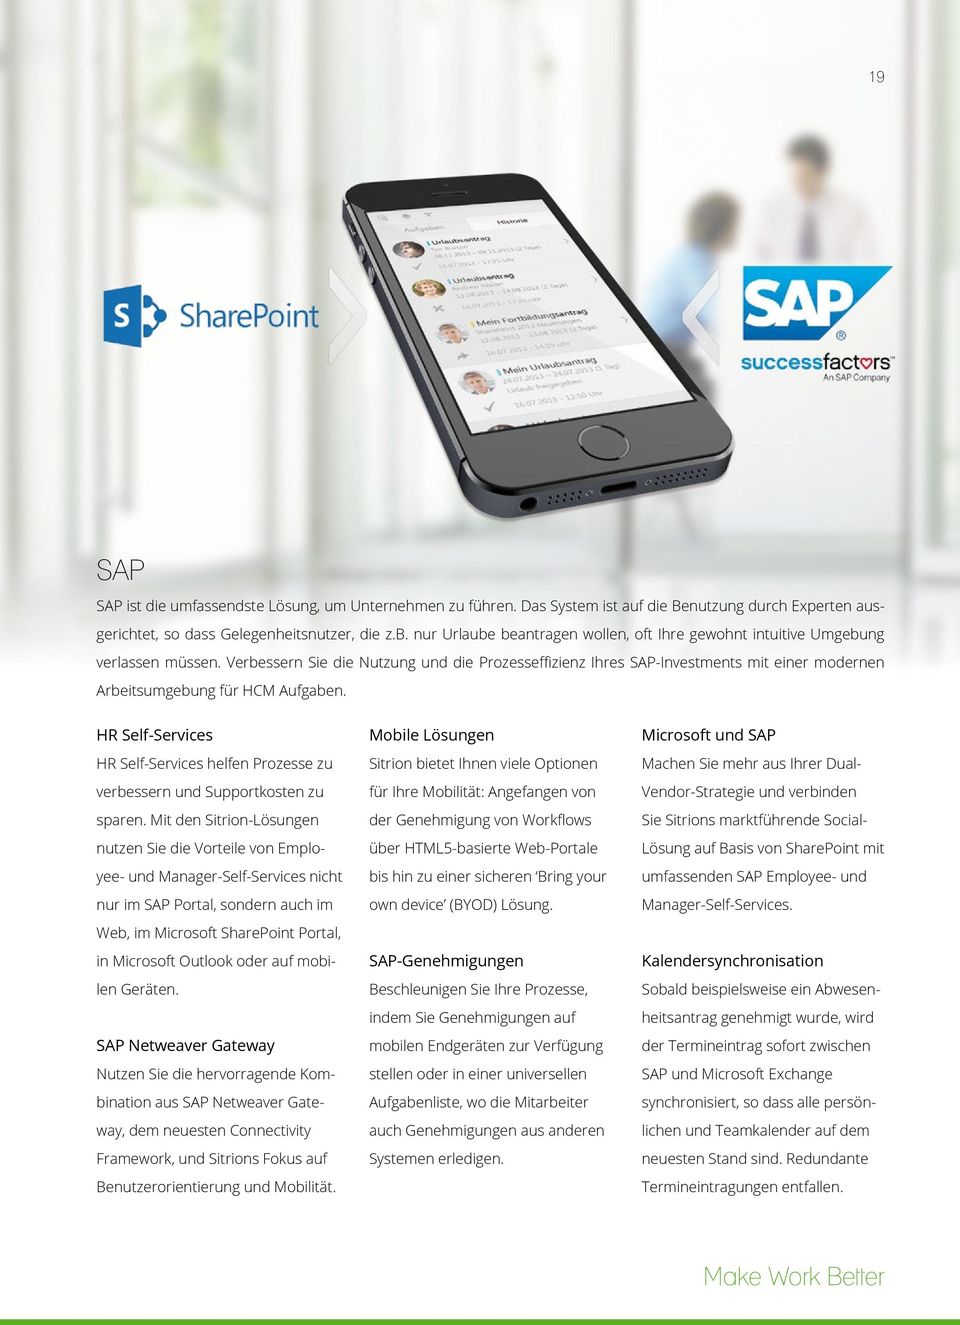 Verbessern Sie die Nutzung und die Prozesseffizienz Ihres SAP-Investments mit einer modernen Arbeitsumgebung für HCM Aufgaben.